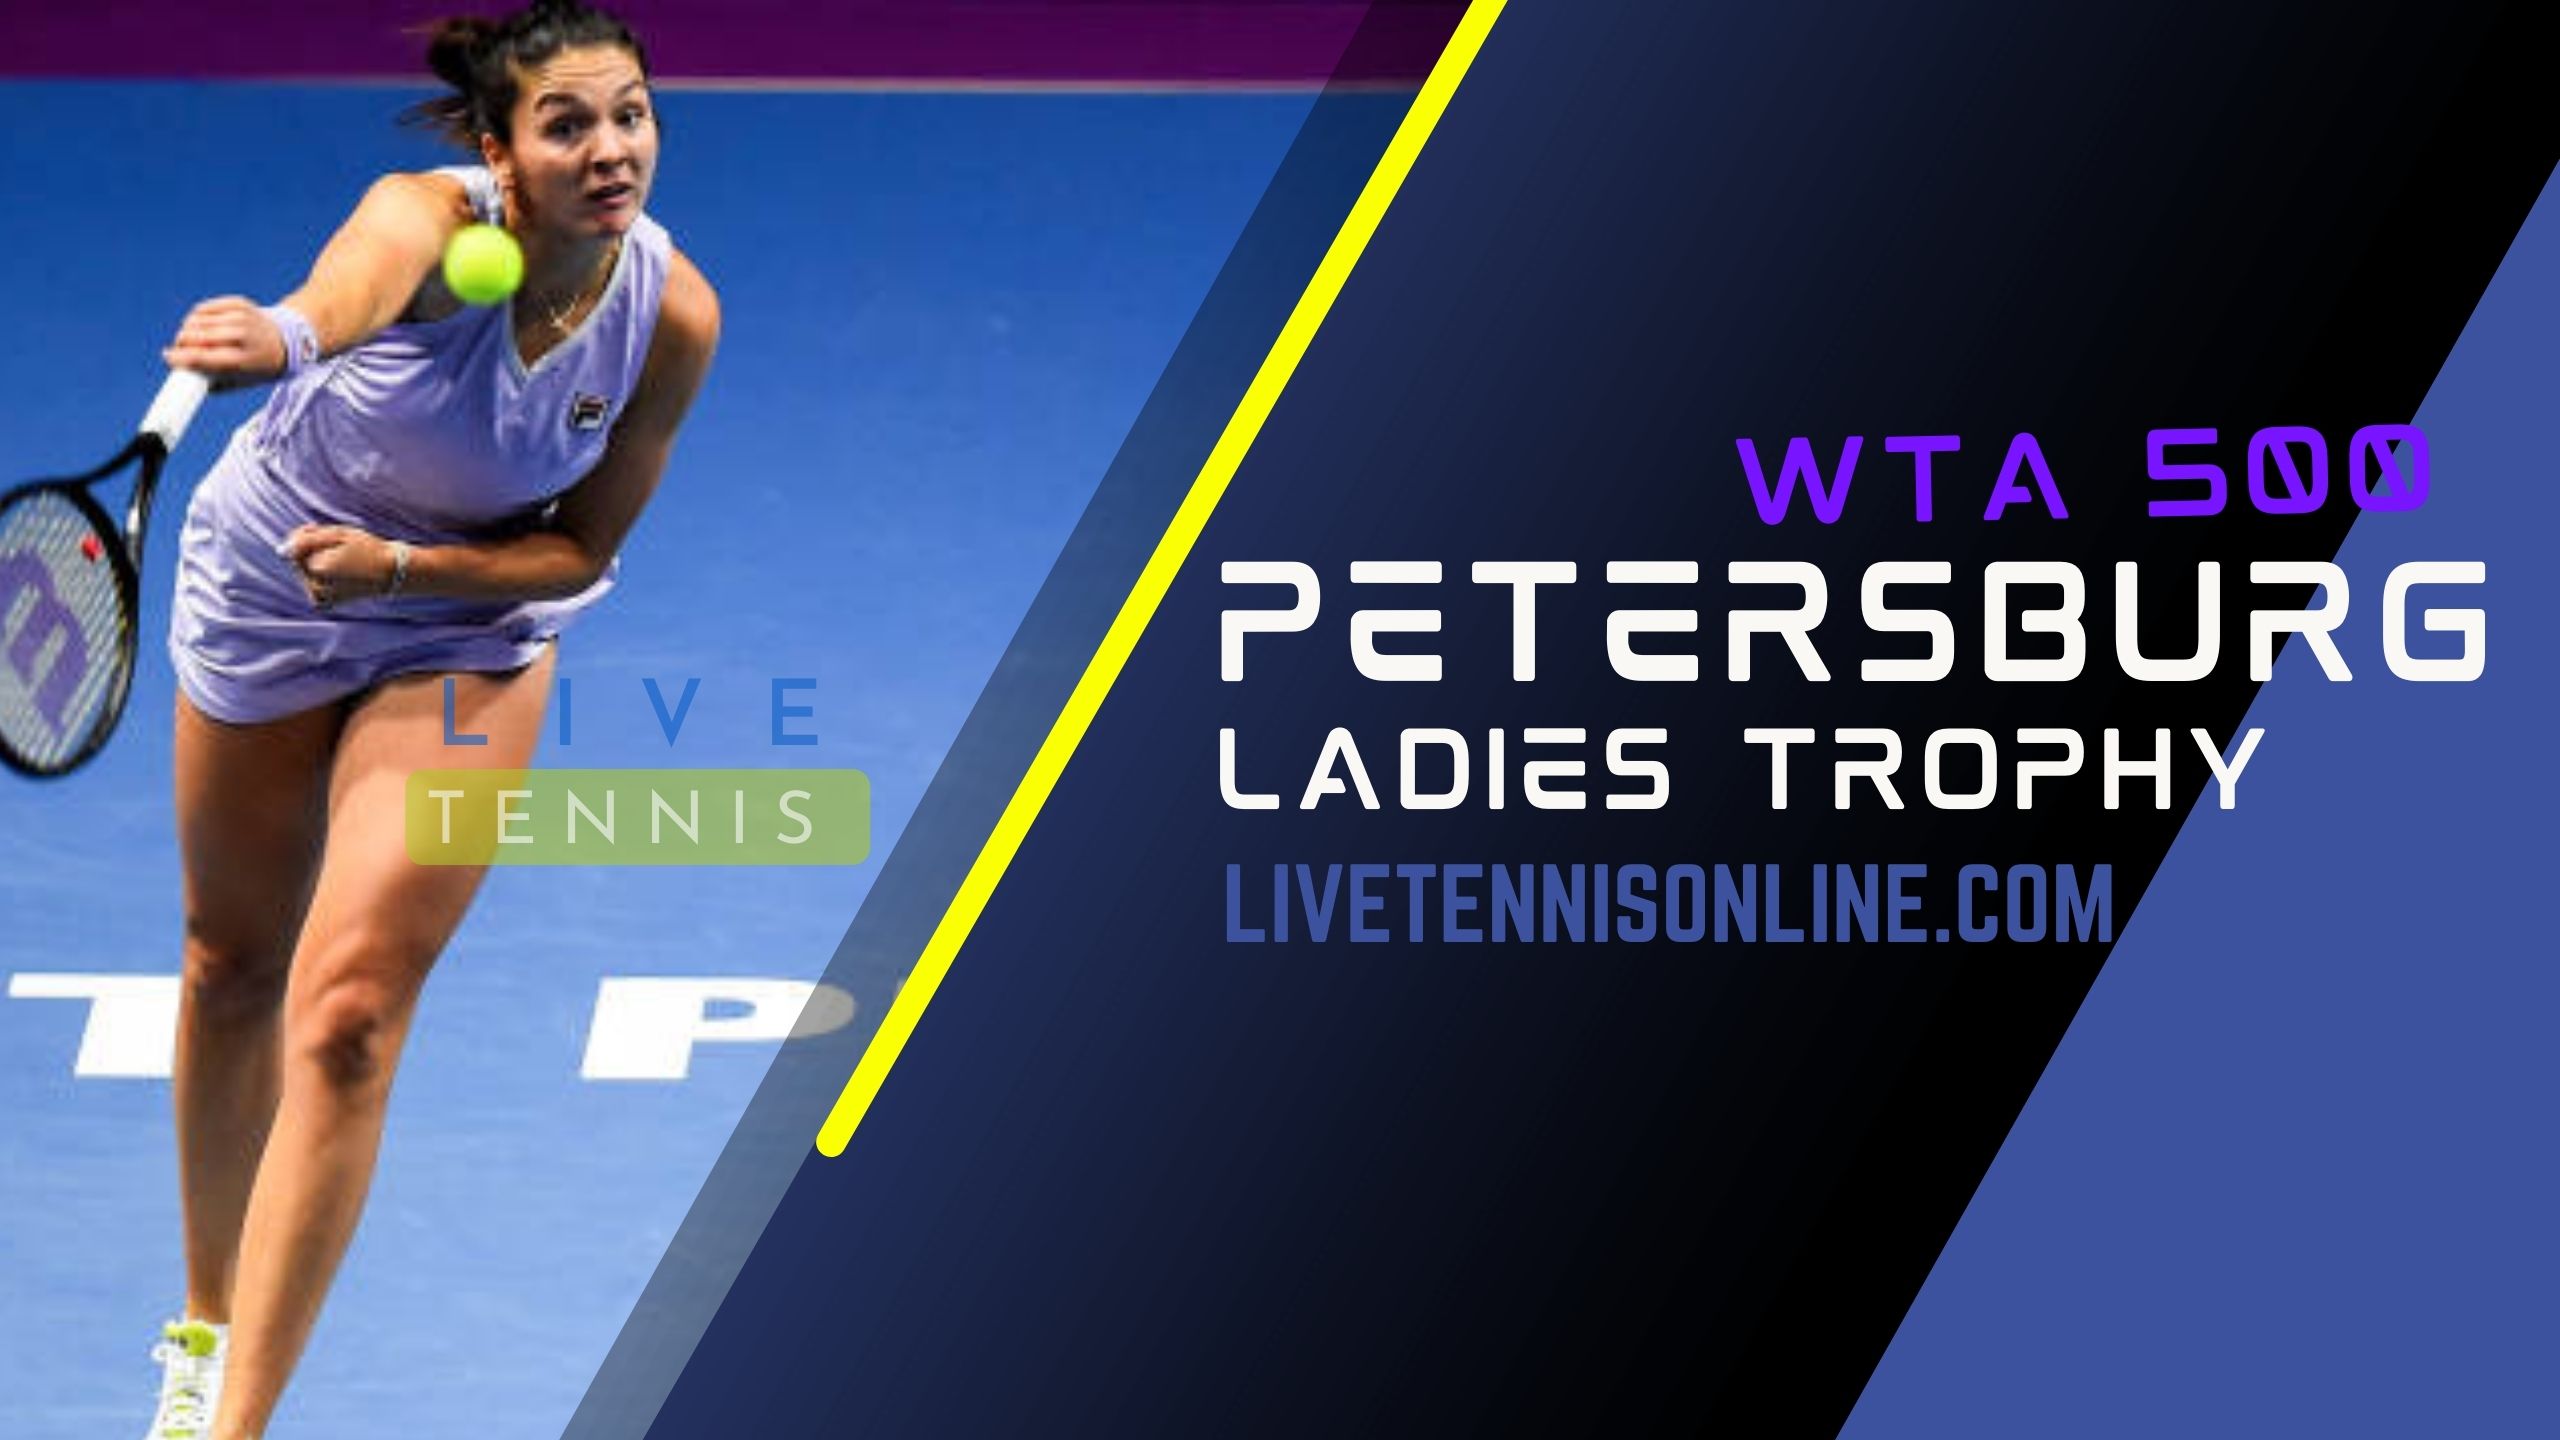 WTA St. Petersburg Ladies Trophy 2019